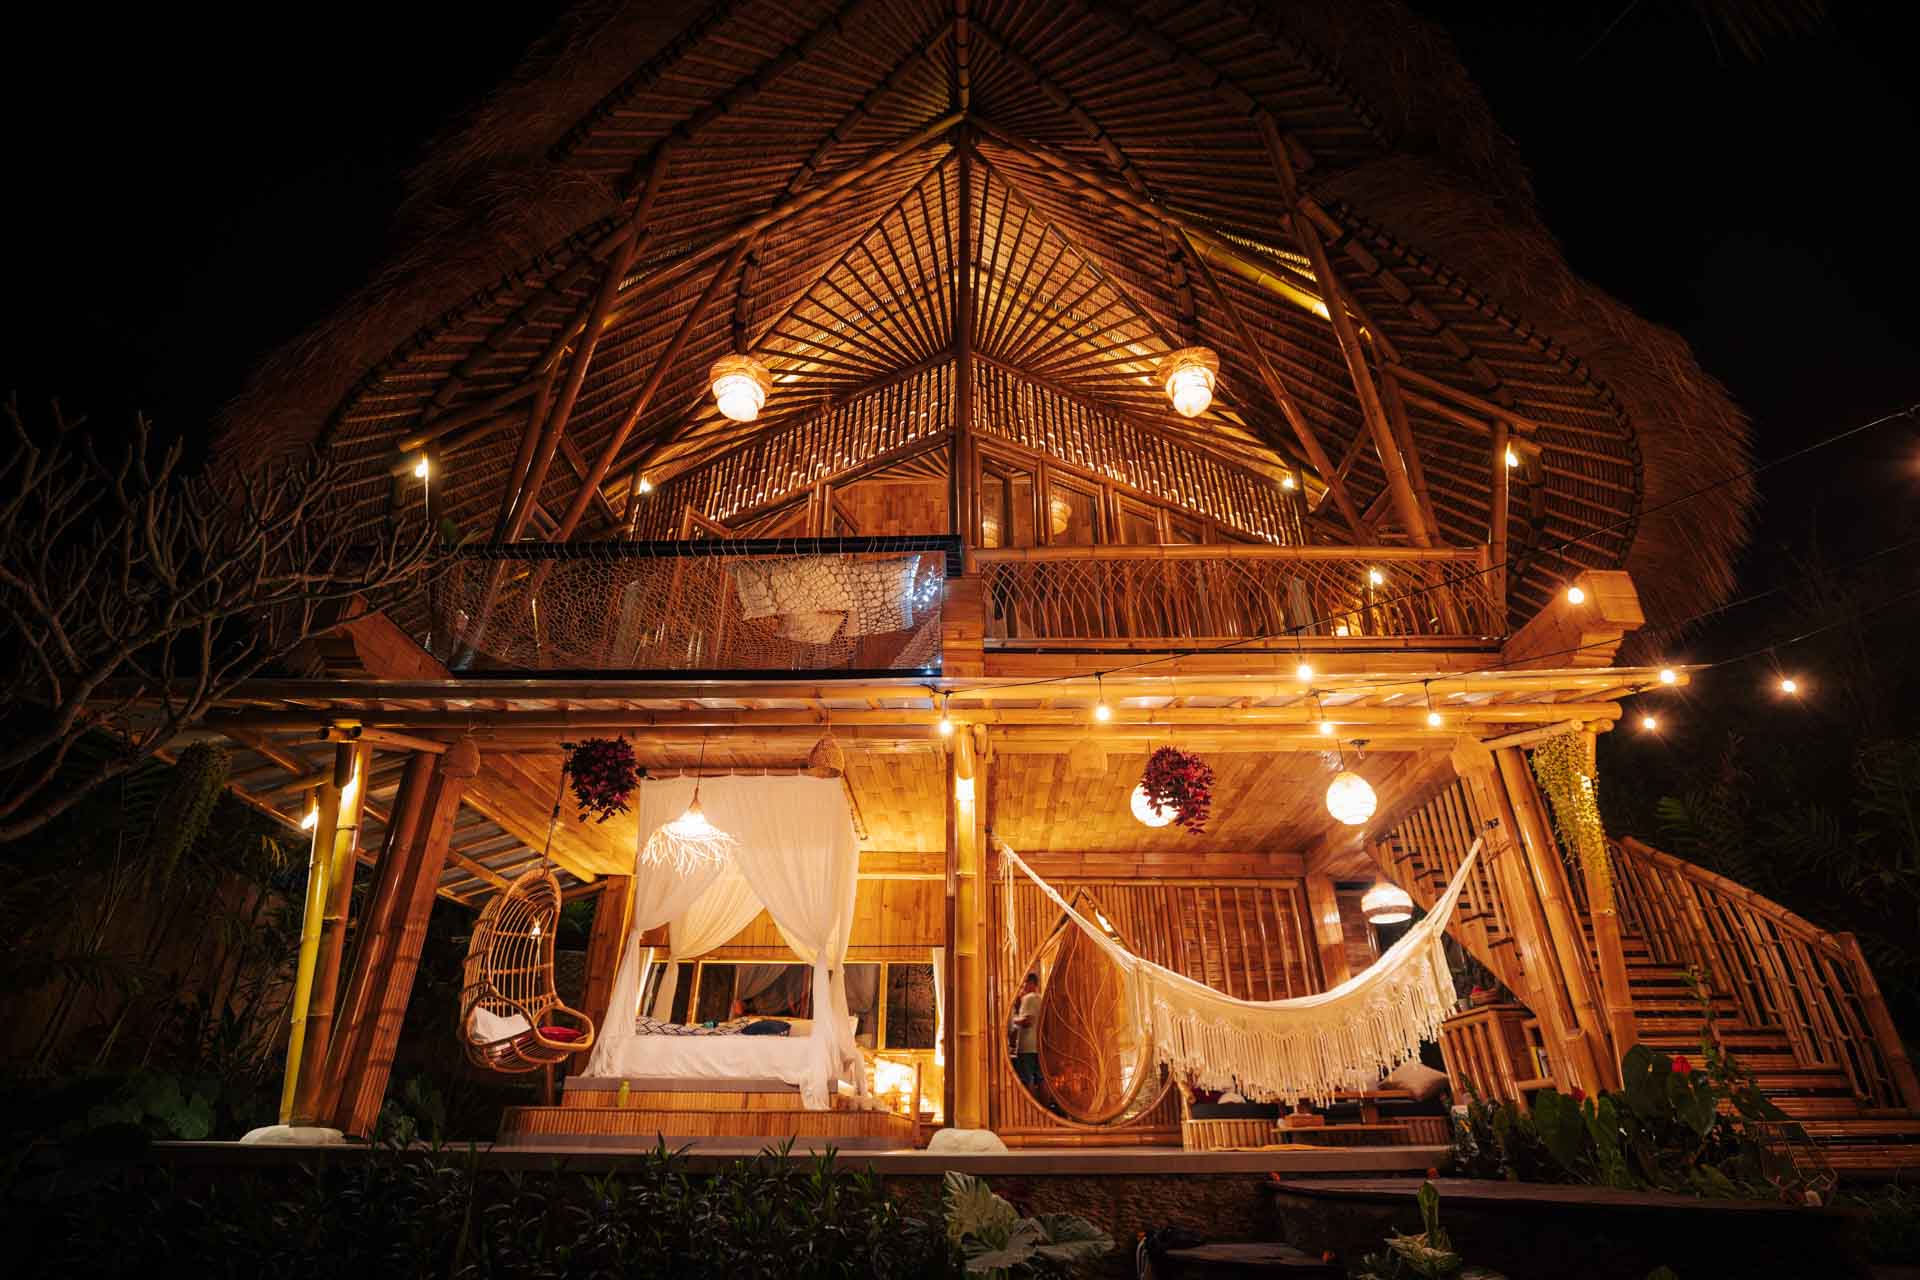 MAGIC HILLS BALI - Bamboo House In Bali (2021) | Jonny Melon